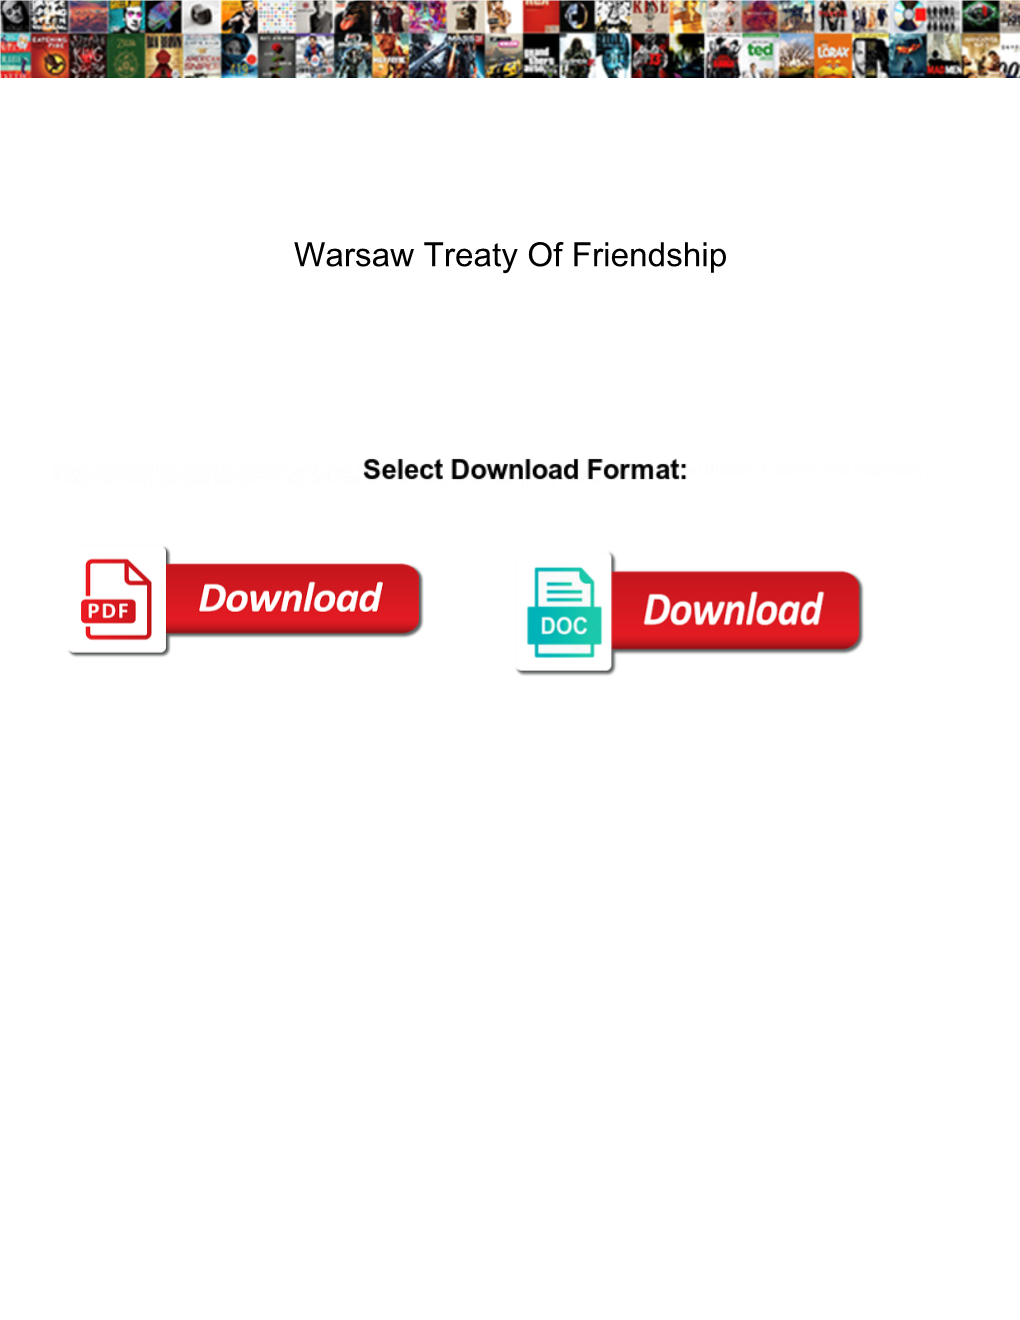 Warsaw Treaty of Friendship